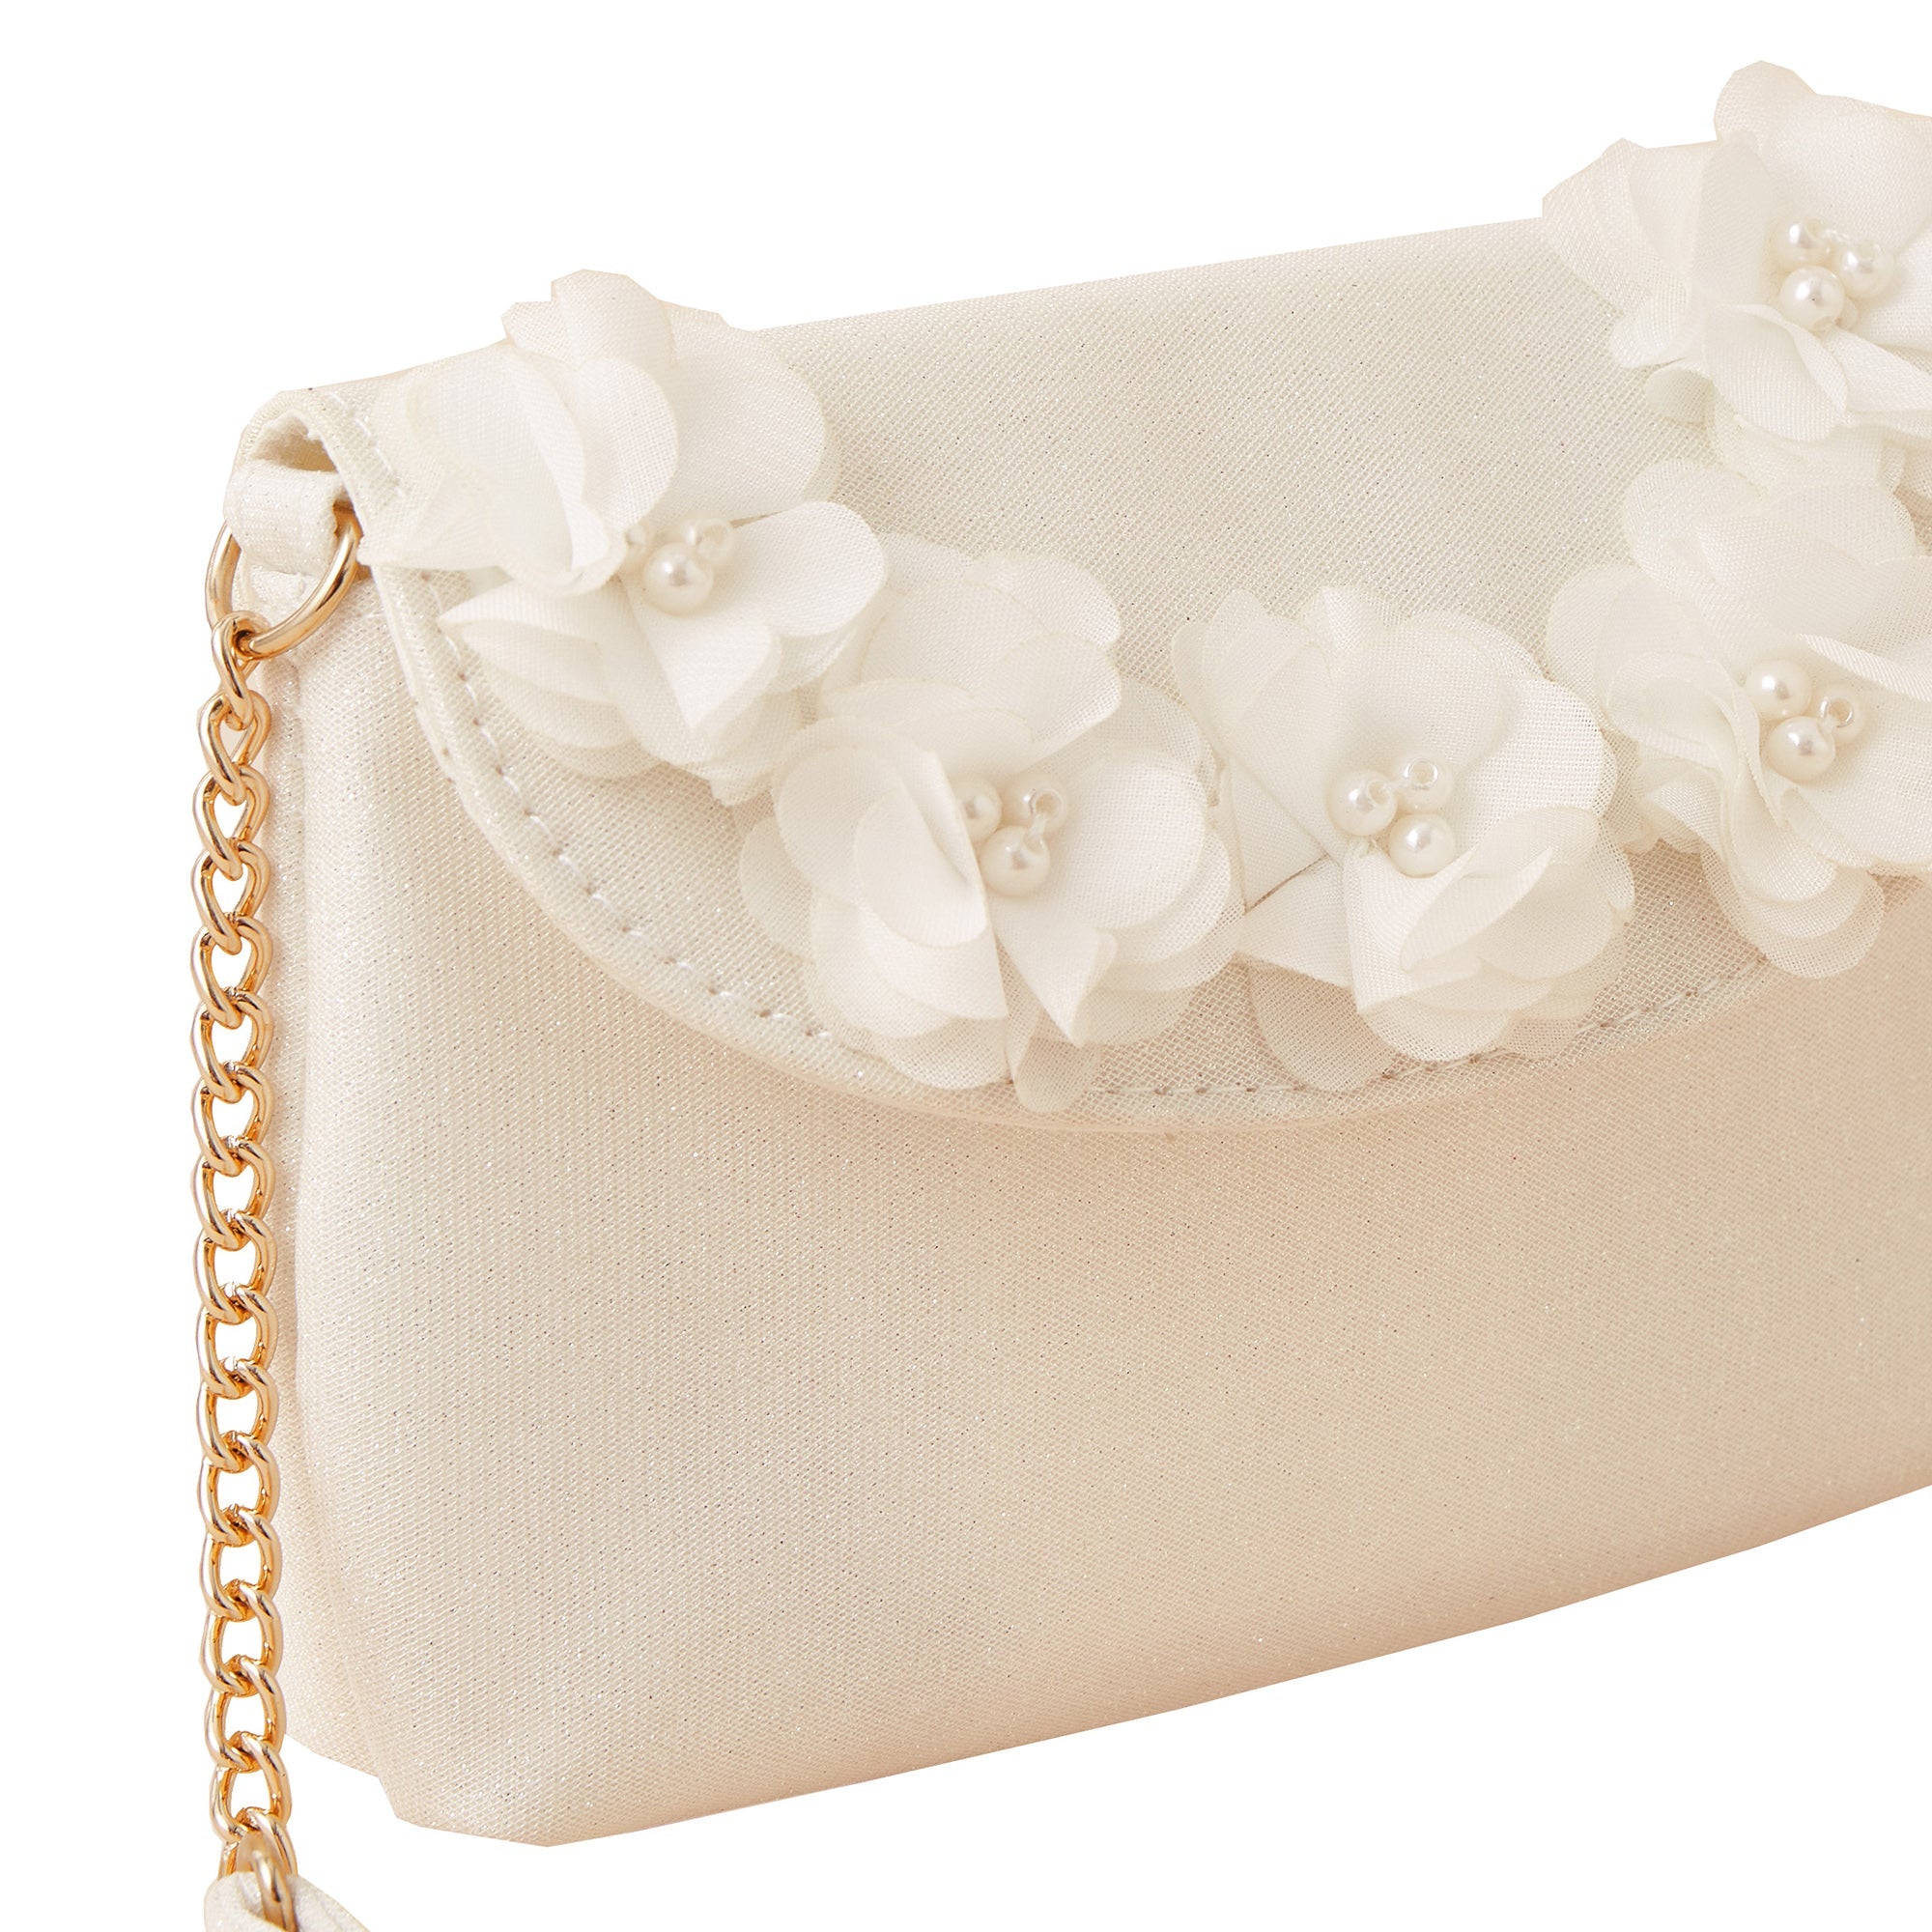 Accessorize London Girl's Multi Flower White Bag